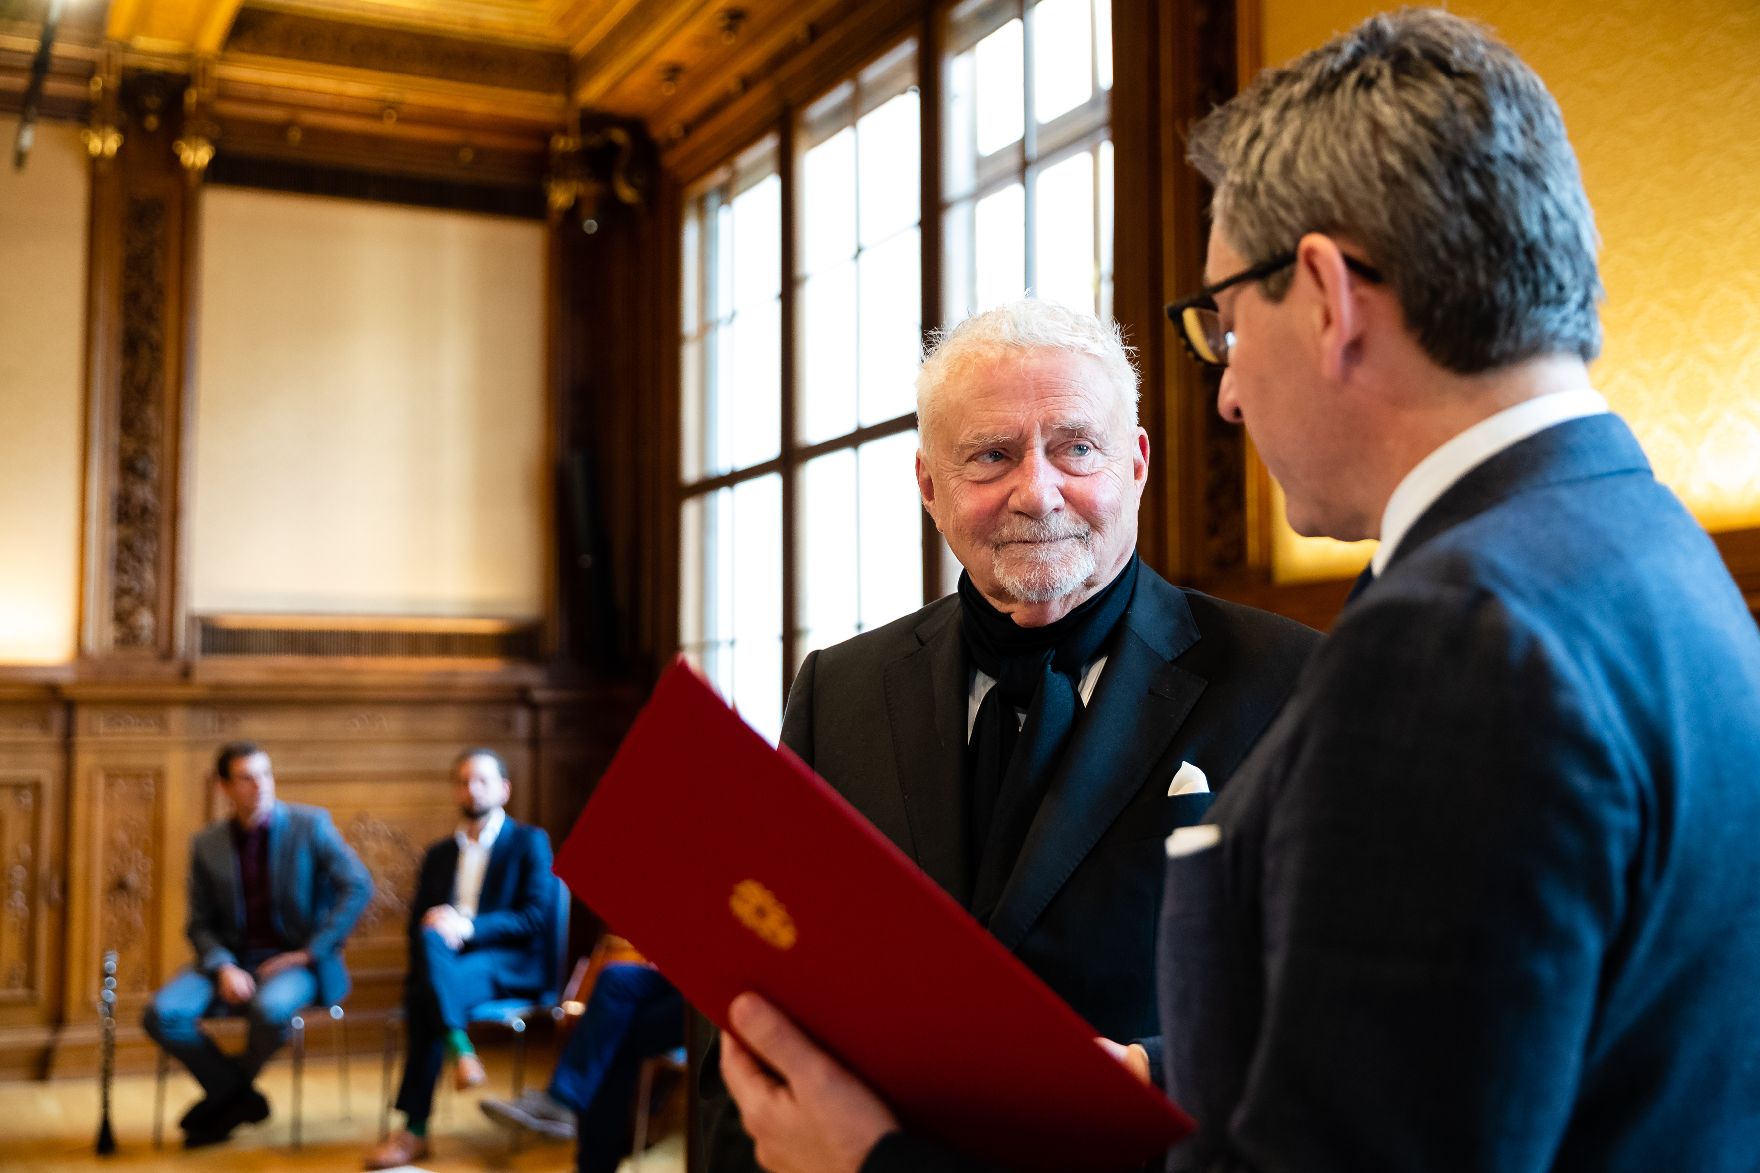 Am 22. November 2019 überreichte Sektionschef Jürgen Meindl (r.) das Goldene Ehrenzeichen für Verdienste um die Republik Österreich an Erich Martin Wolf (l.) und die Urkunde, mit der Wolfgang Klivana der Berufstitel Professor verliehen wurde.